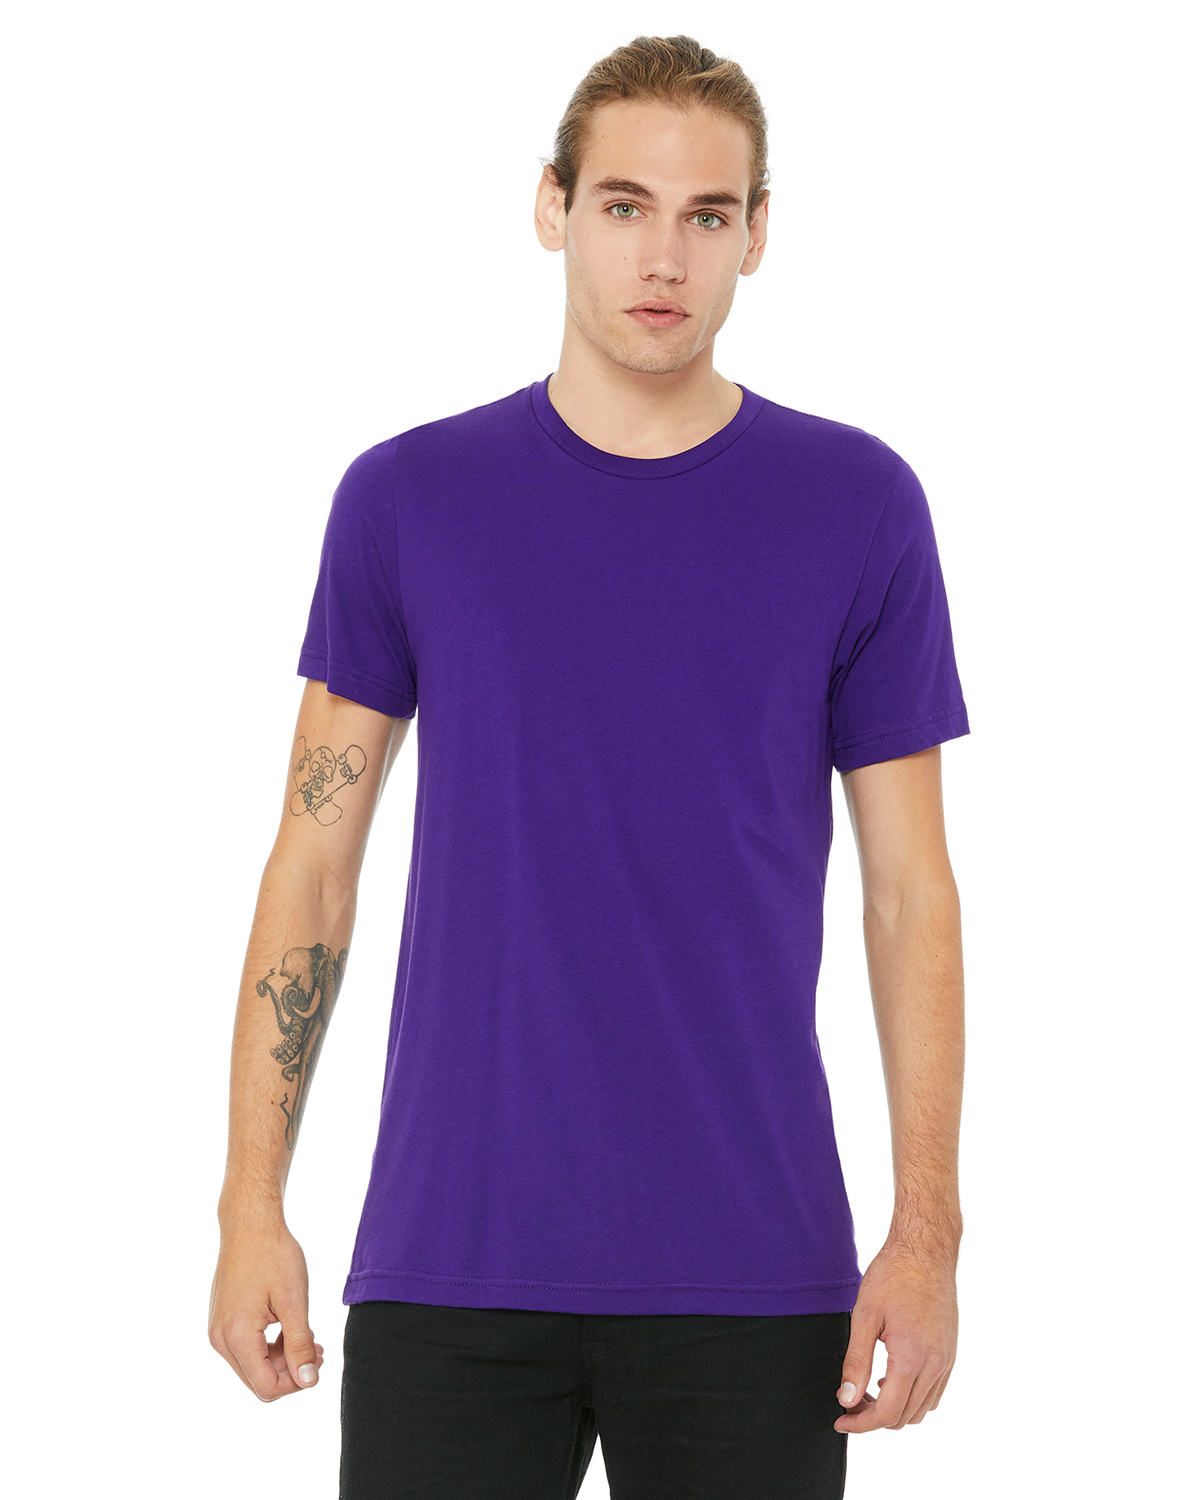 violet color jersey